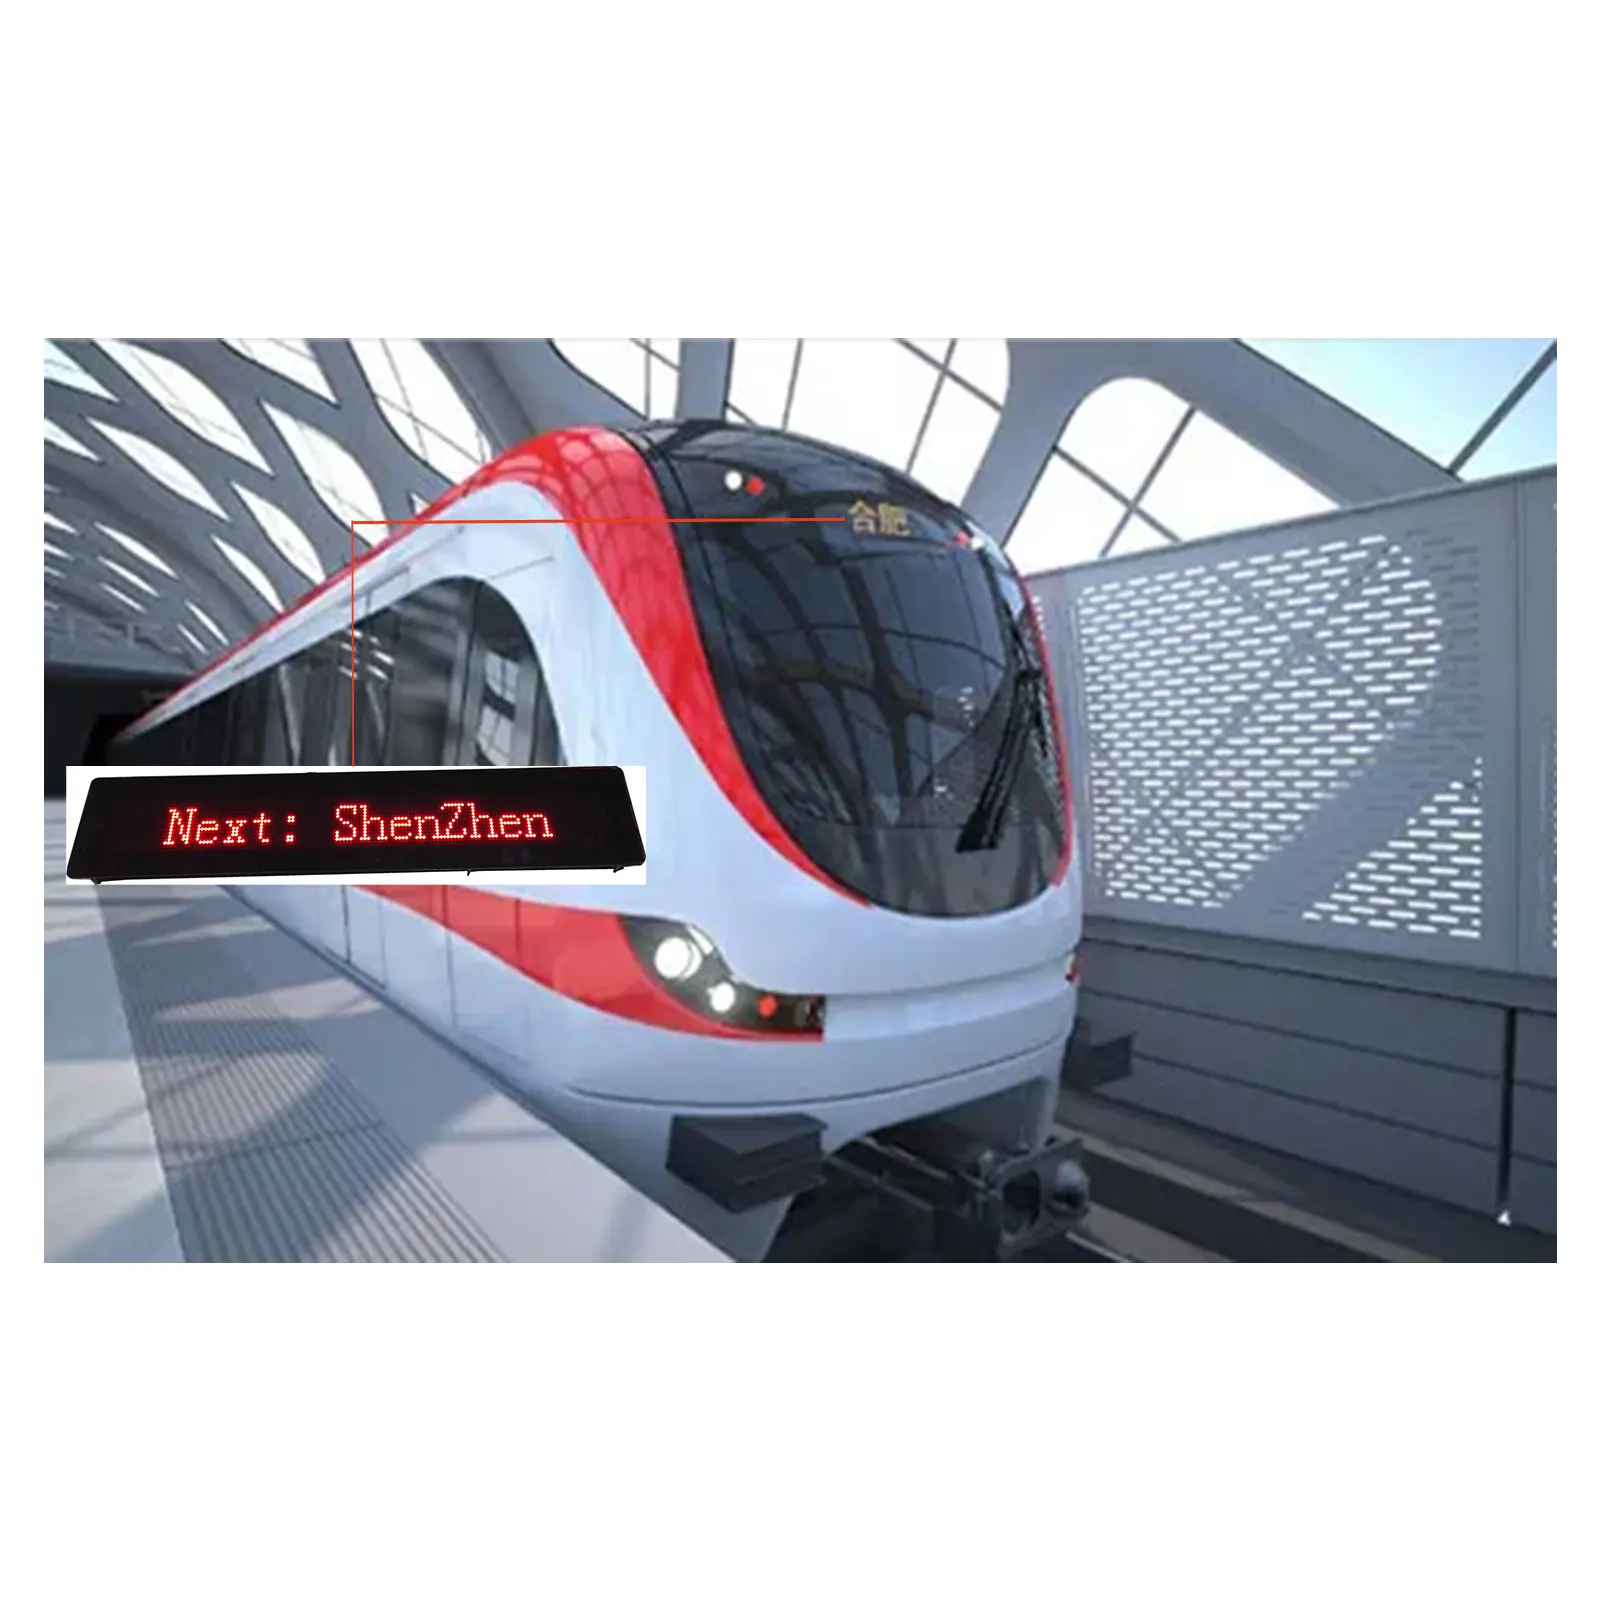 لوحة مقاسات مخصصة LED للمعلومات الإلكترونية, لوحة بأشكال مخصصة ، وشاشة عرض لعلامة الوجهة ، مزودة بخط نقل عبر السكك الحديدية/القطار/القطار